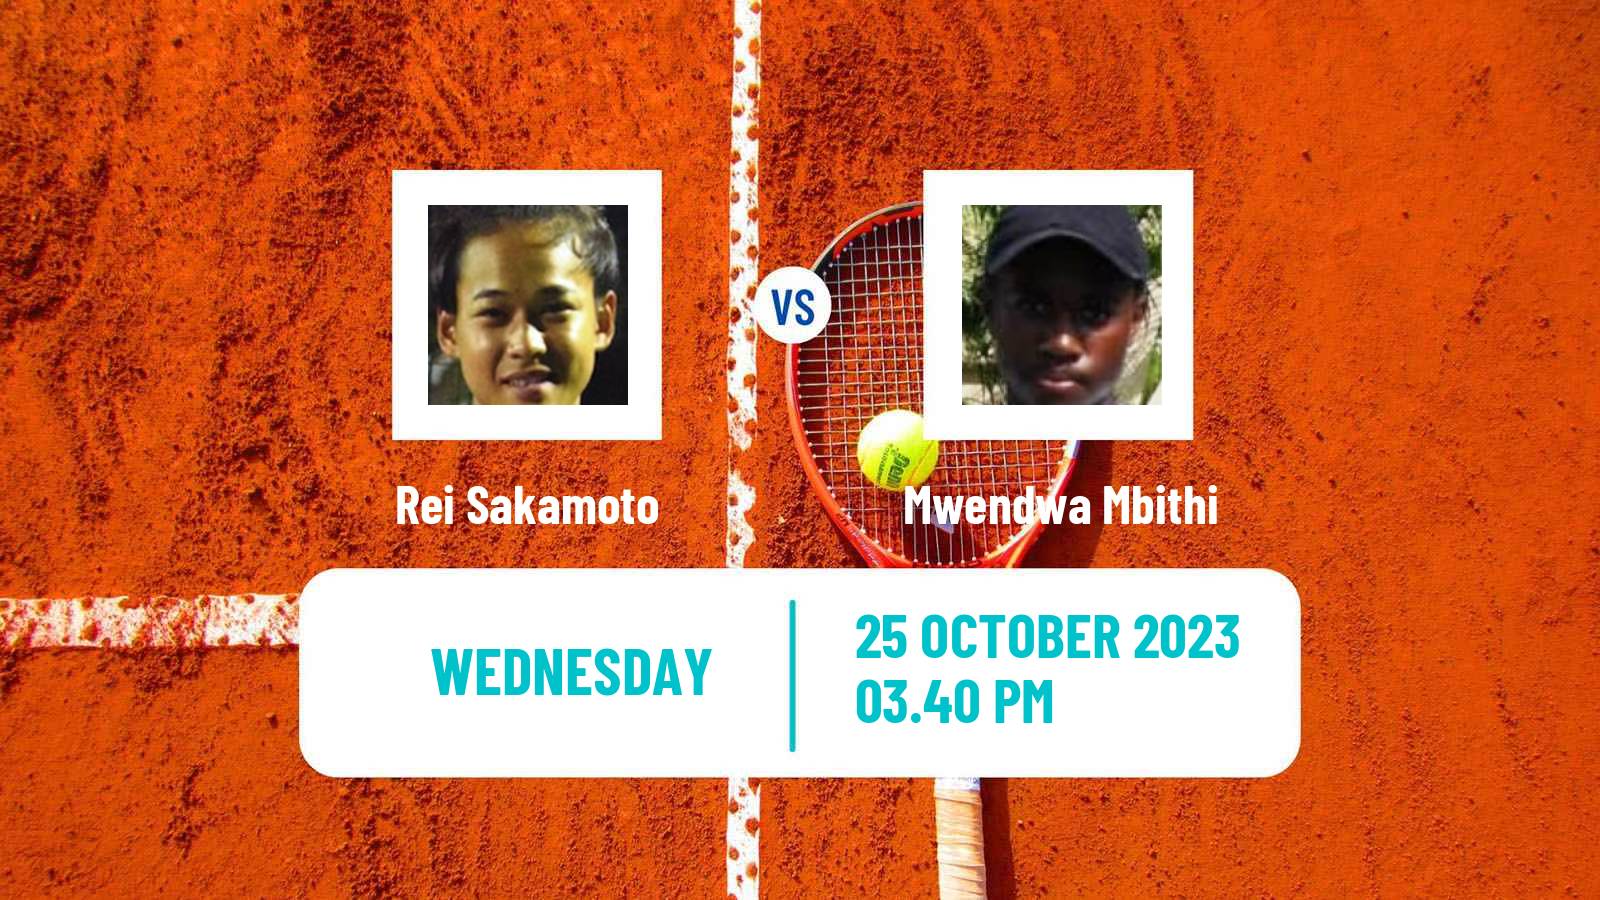 Tennis ITF M15 Tallahassee Fl Men Rei Sakamoto - Mwendwa Mbithi